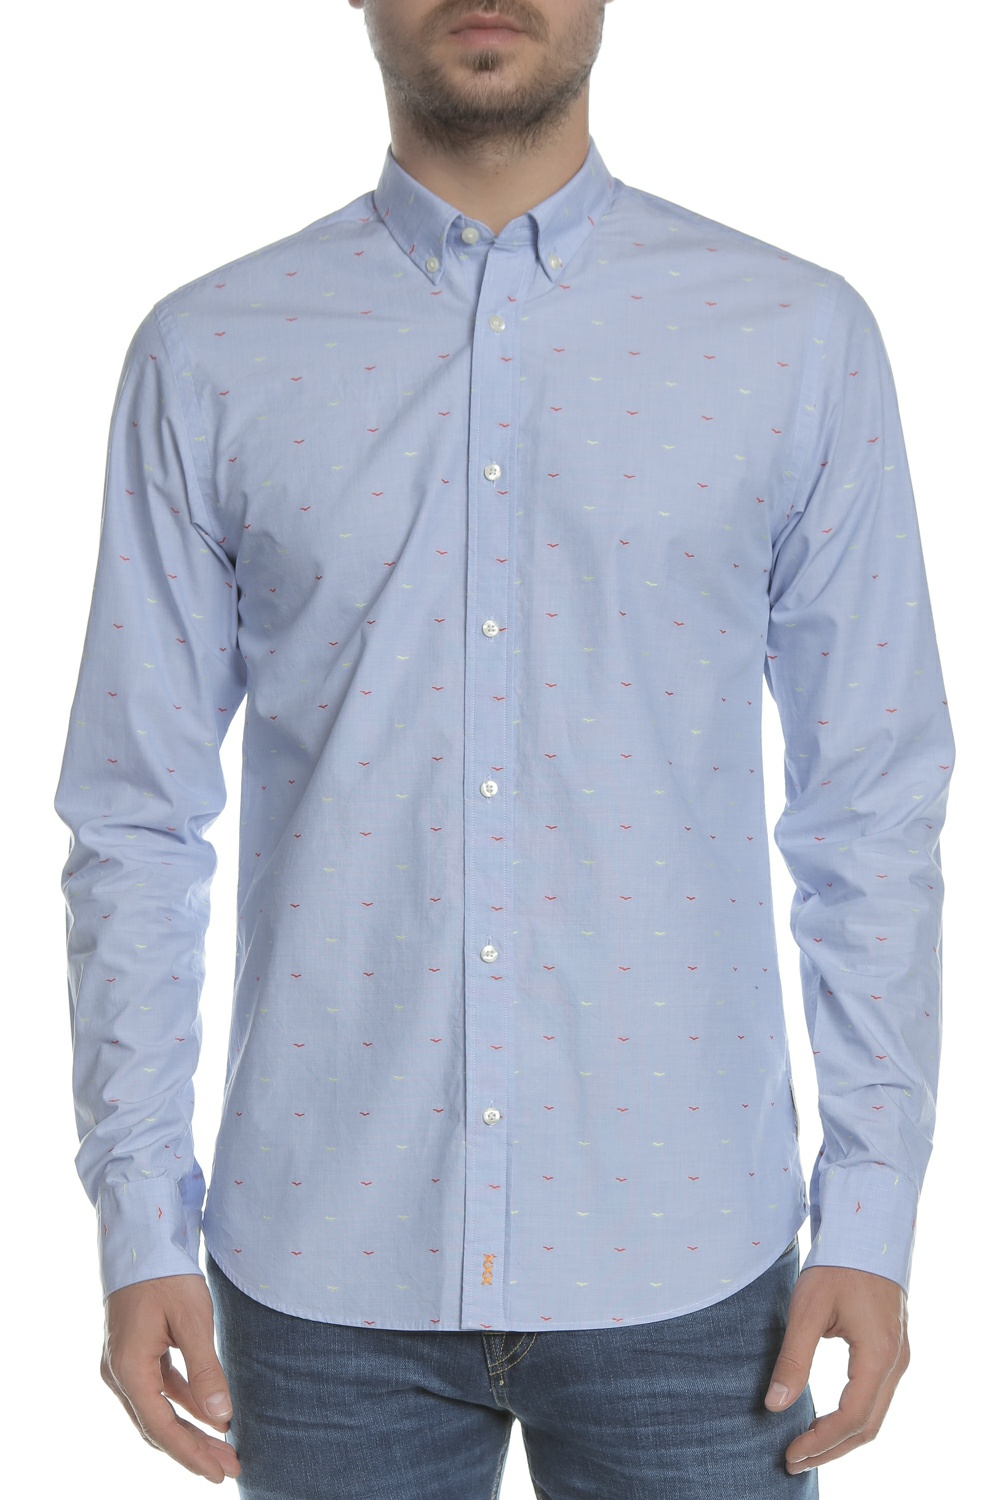 SCOTCH & SODA SCOTCH & SODA - Ανδρικό πουκάμισο REGULAR FIT - Fil-Coupι shirt μπλε